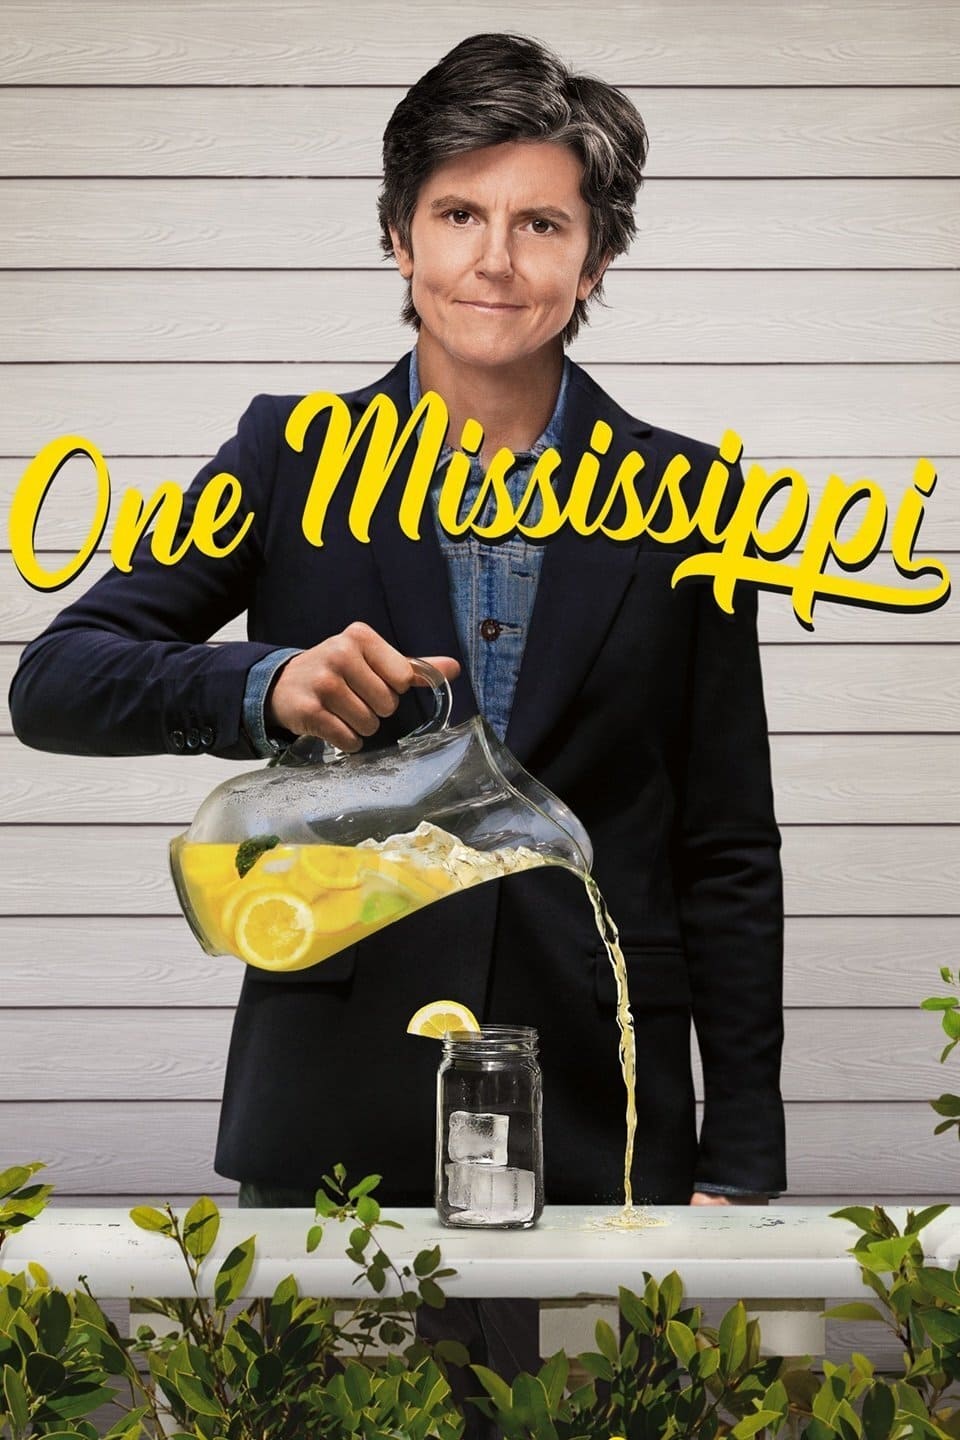 One Mississippi poster